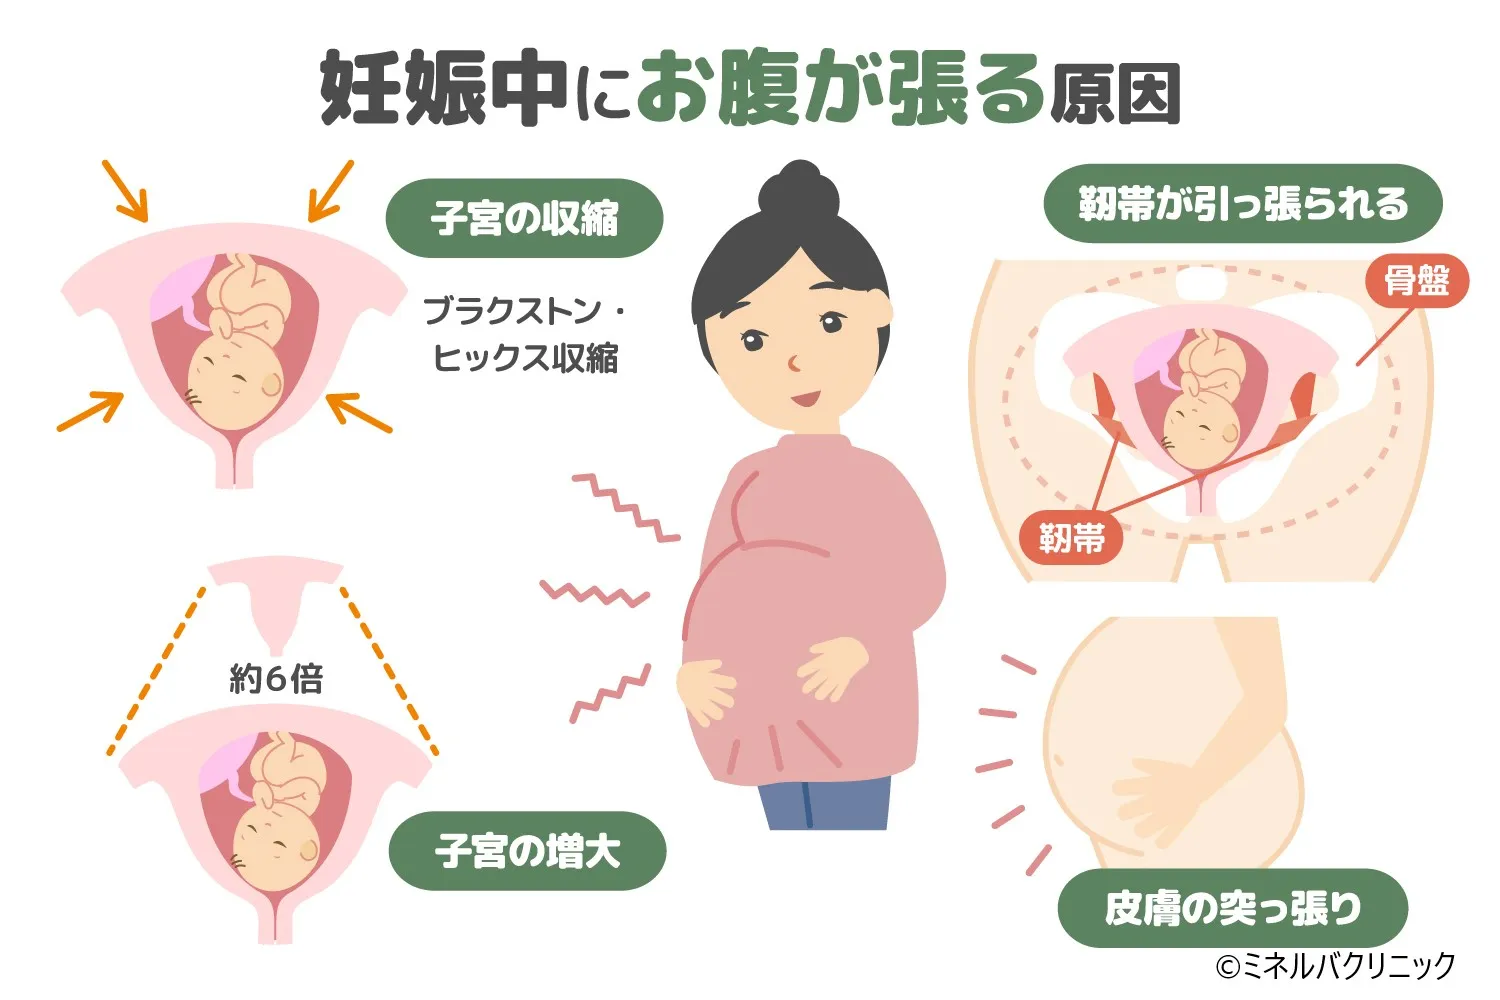 妊娠によるお腹の張りとは？症状や対応方法について詳しく解説